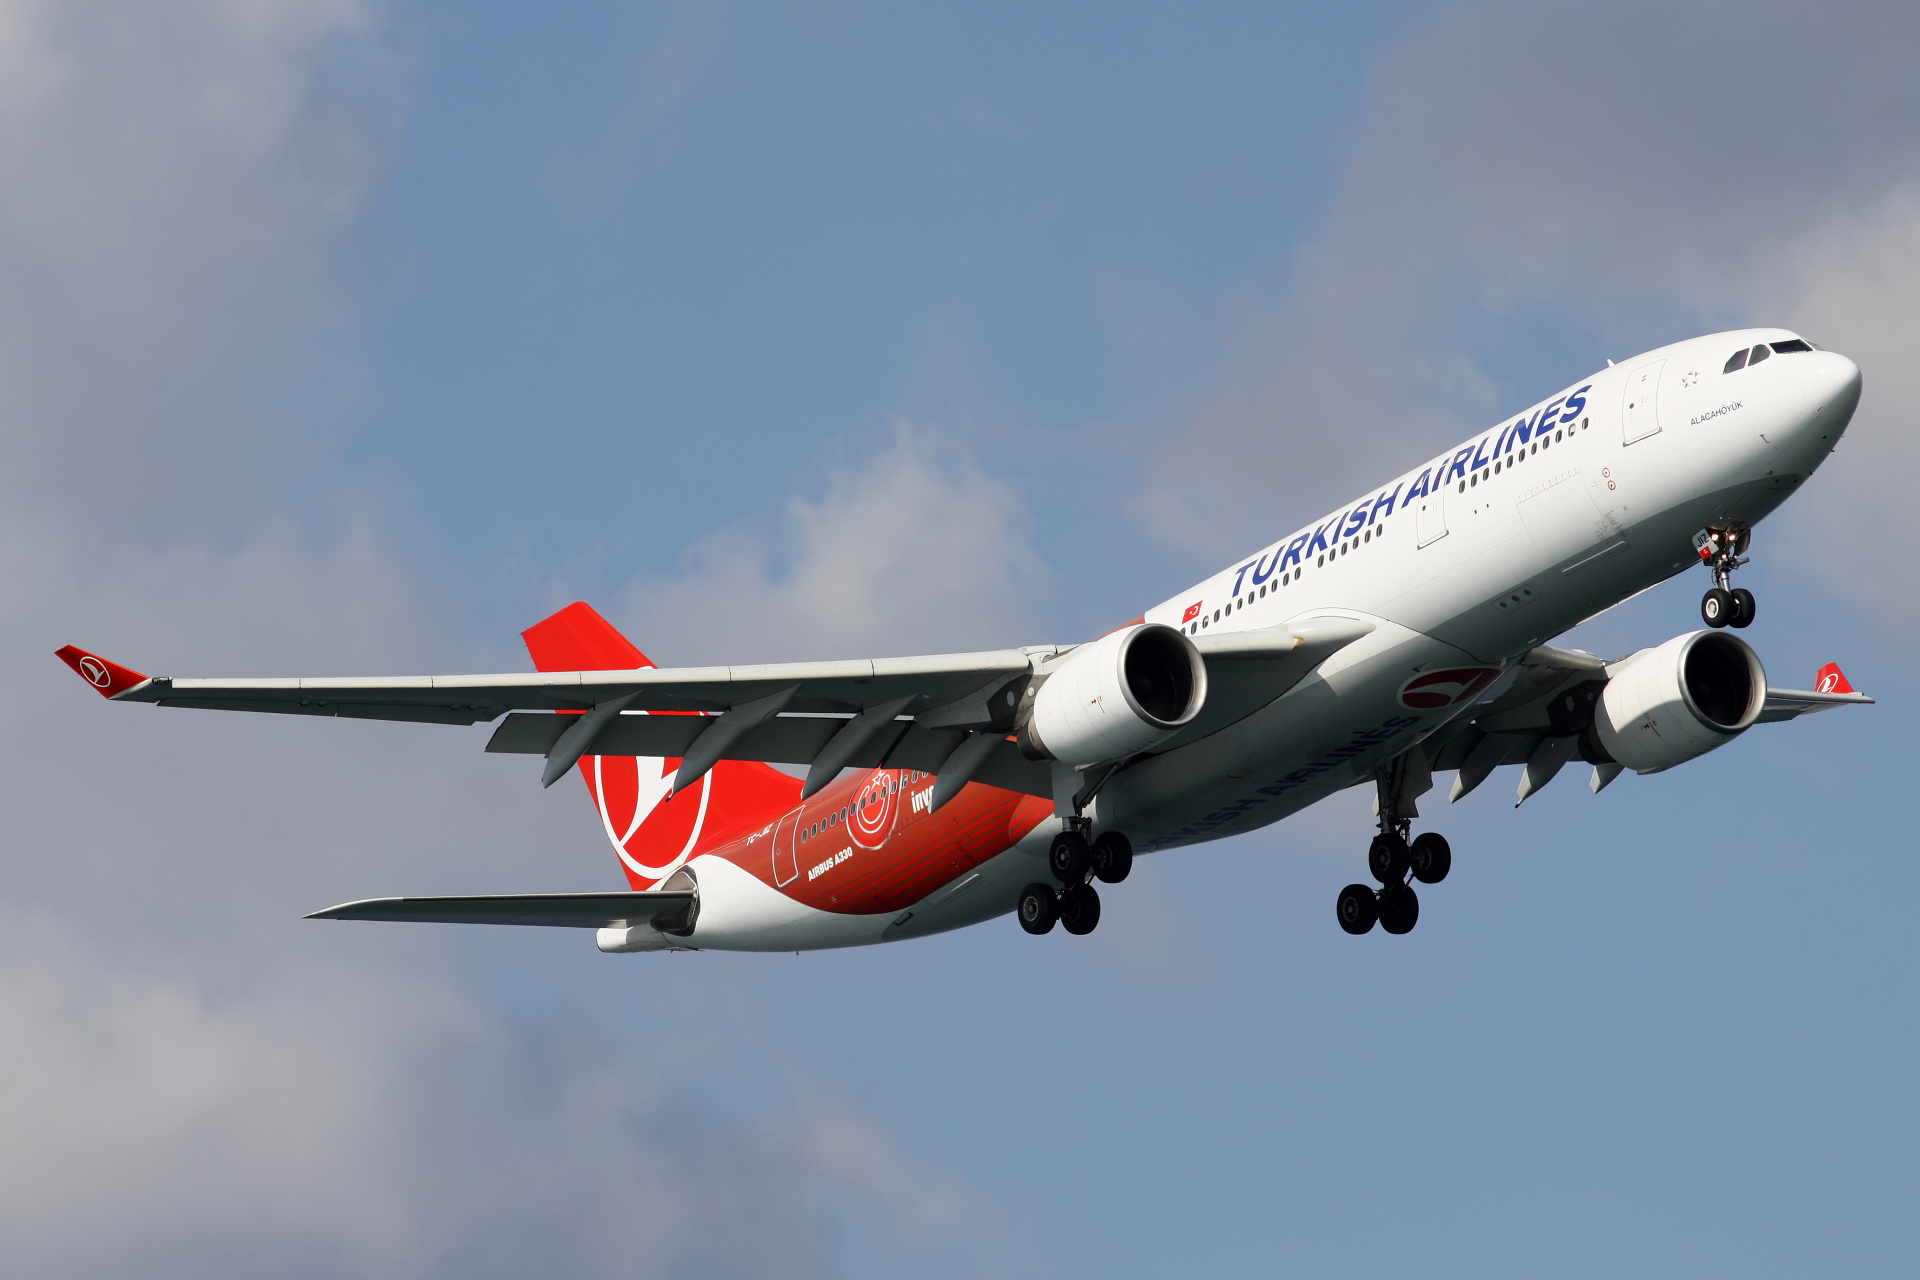 TC-JIZ (malowanie Invest in Turkey) (Samoloty » Port Lotniczy im. Atatürka w Stambule » Airbus A330-200 » THY Turkish Airlines)